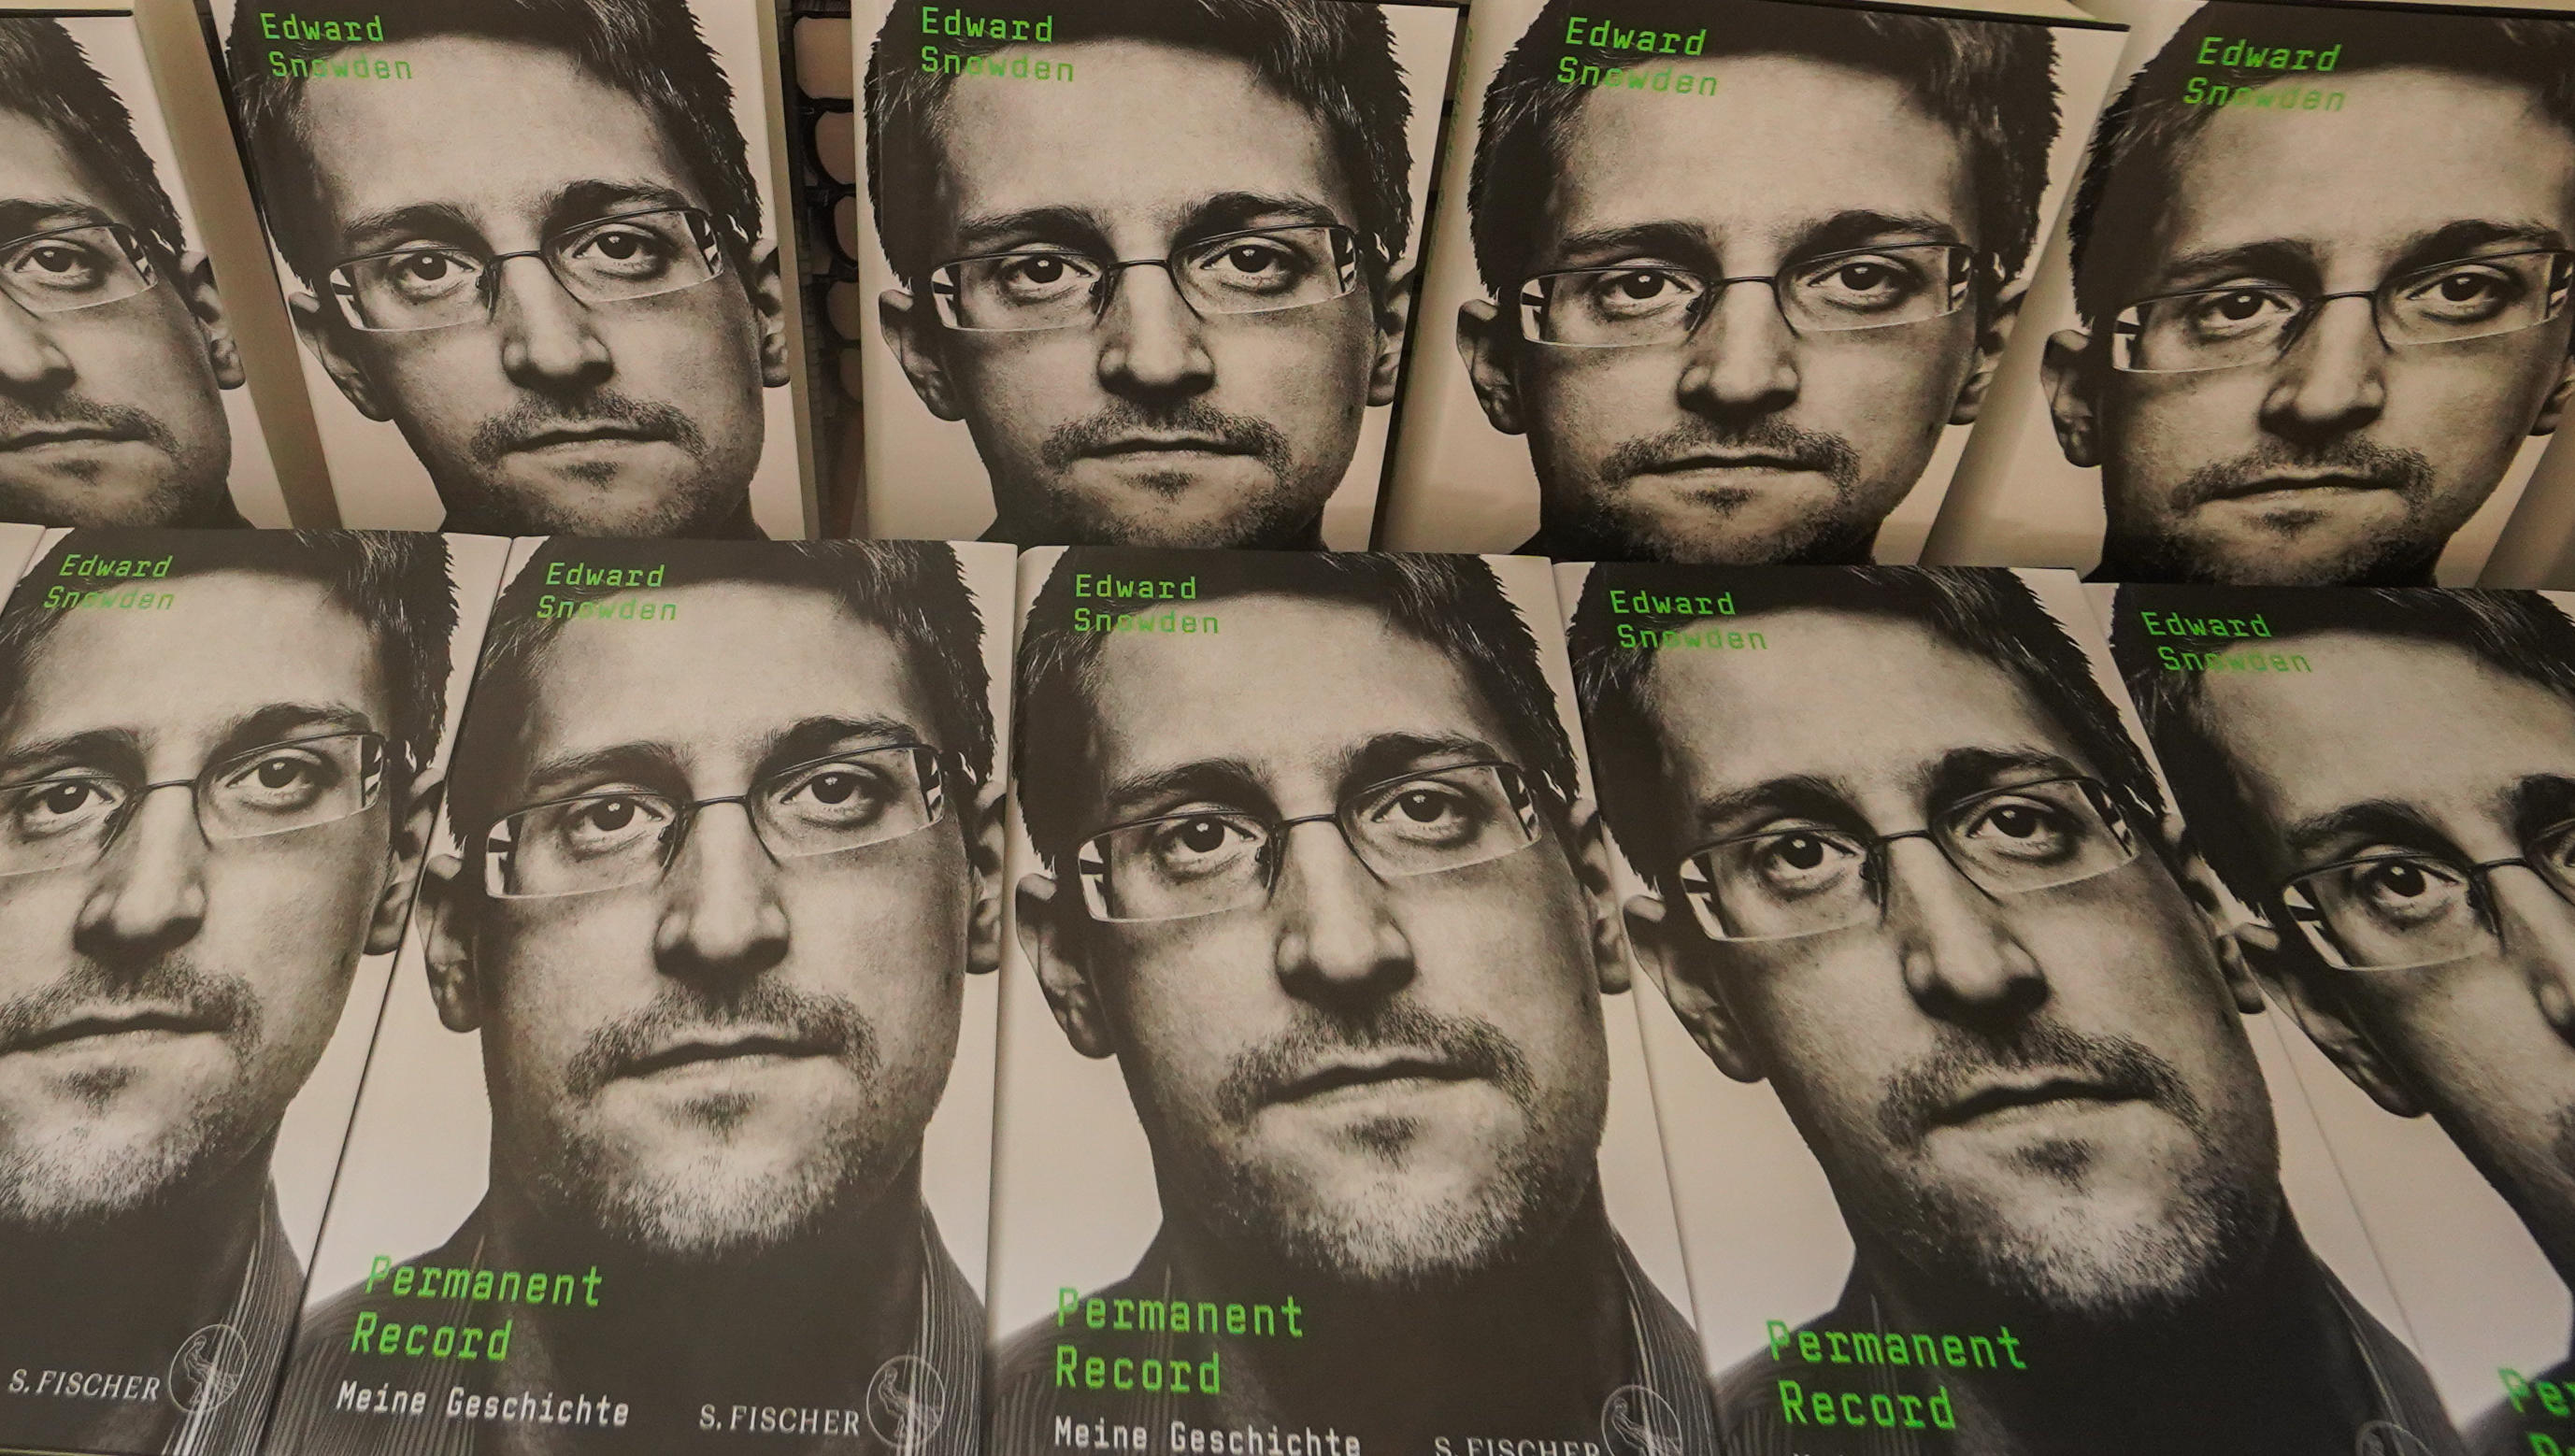 Putin gewährt Edward Snowden russische Staatsbürgerschaft